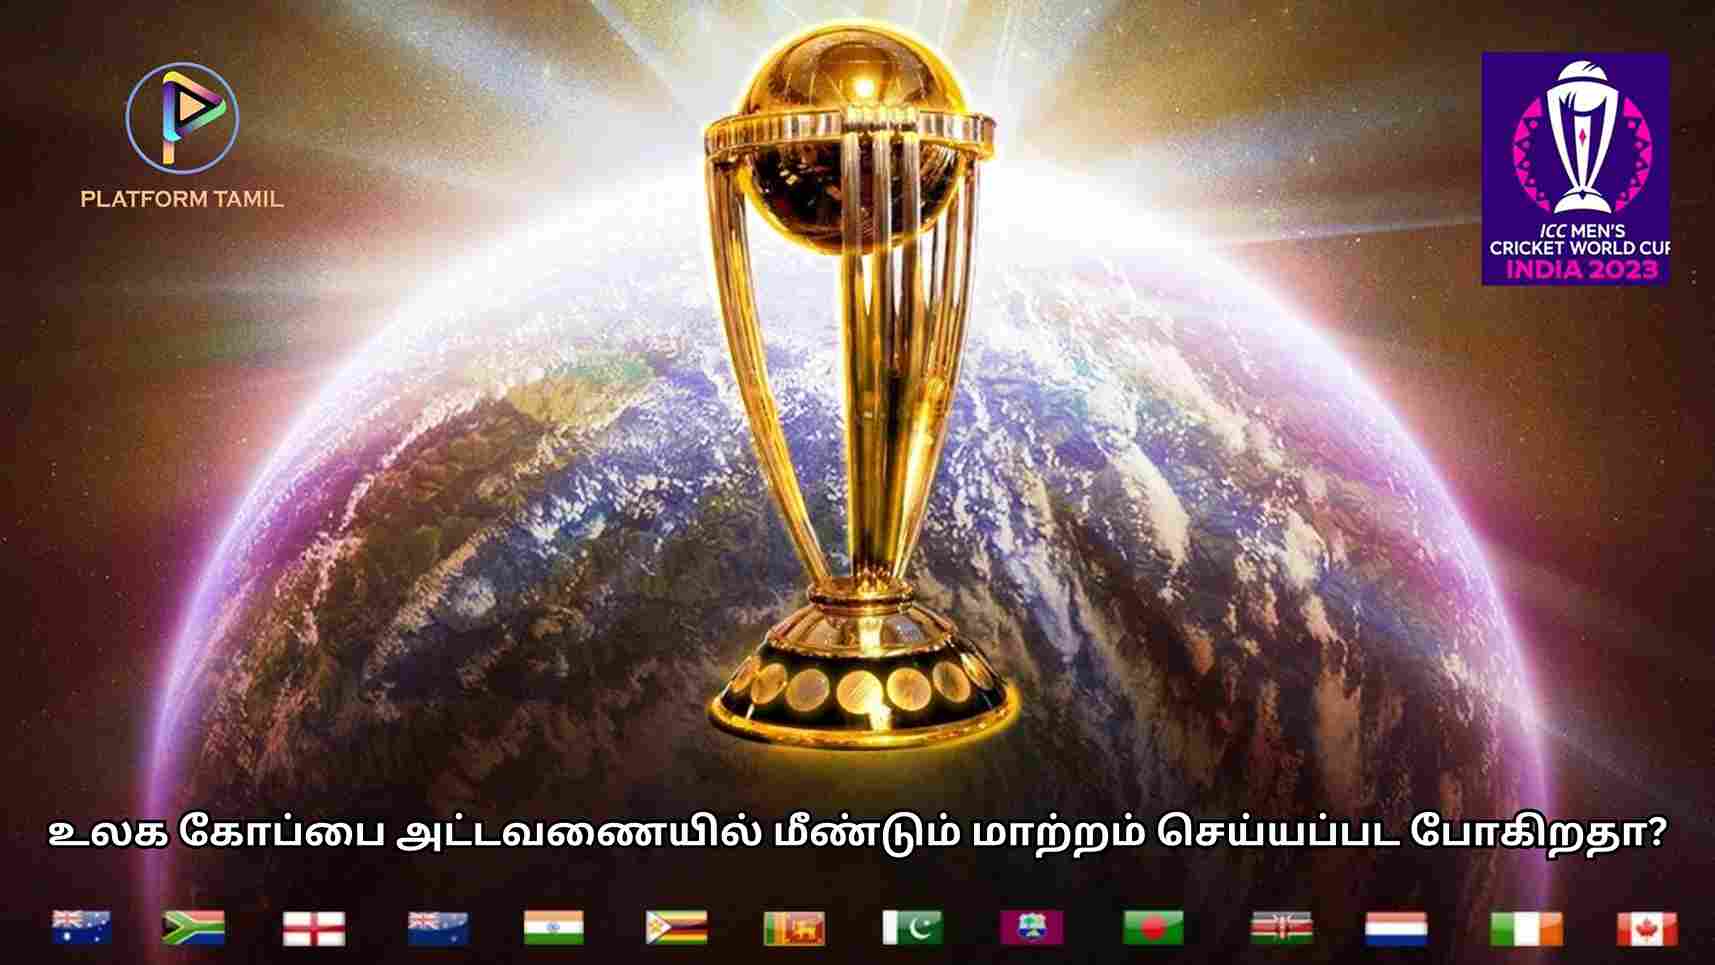 World Cup Schedule - Platform Tamil